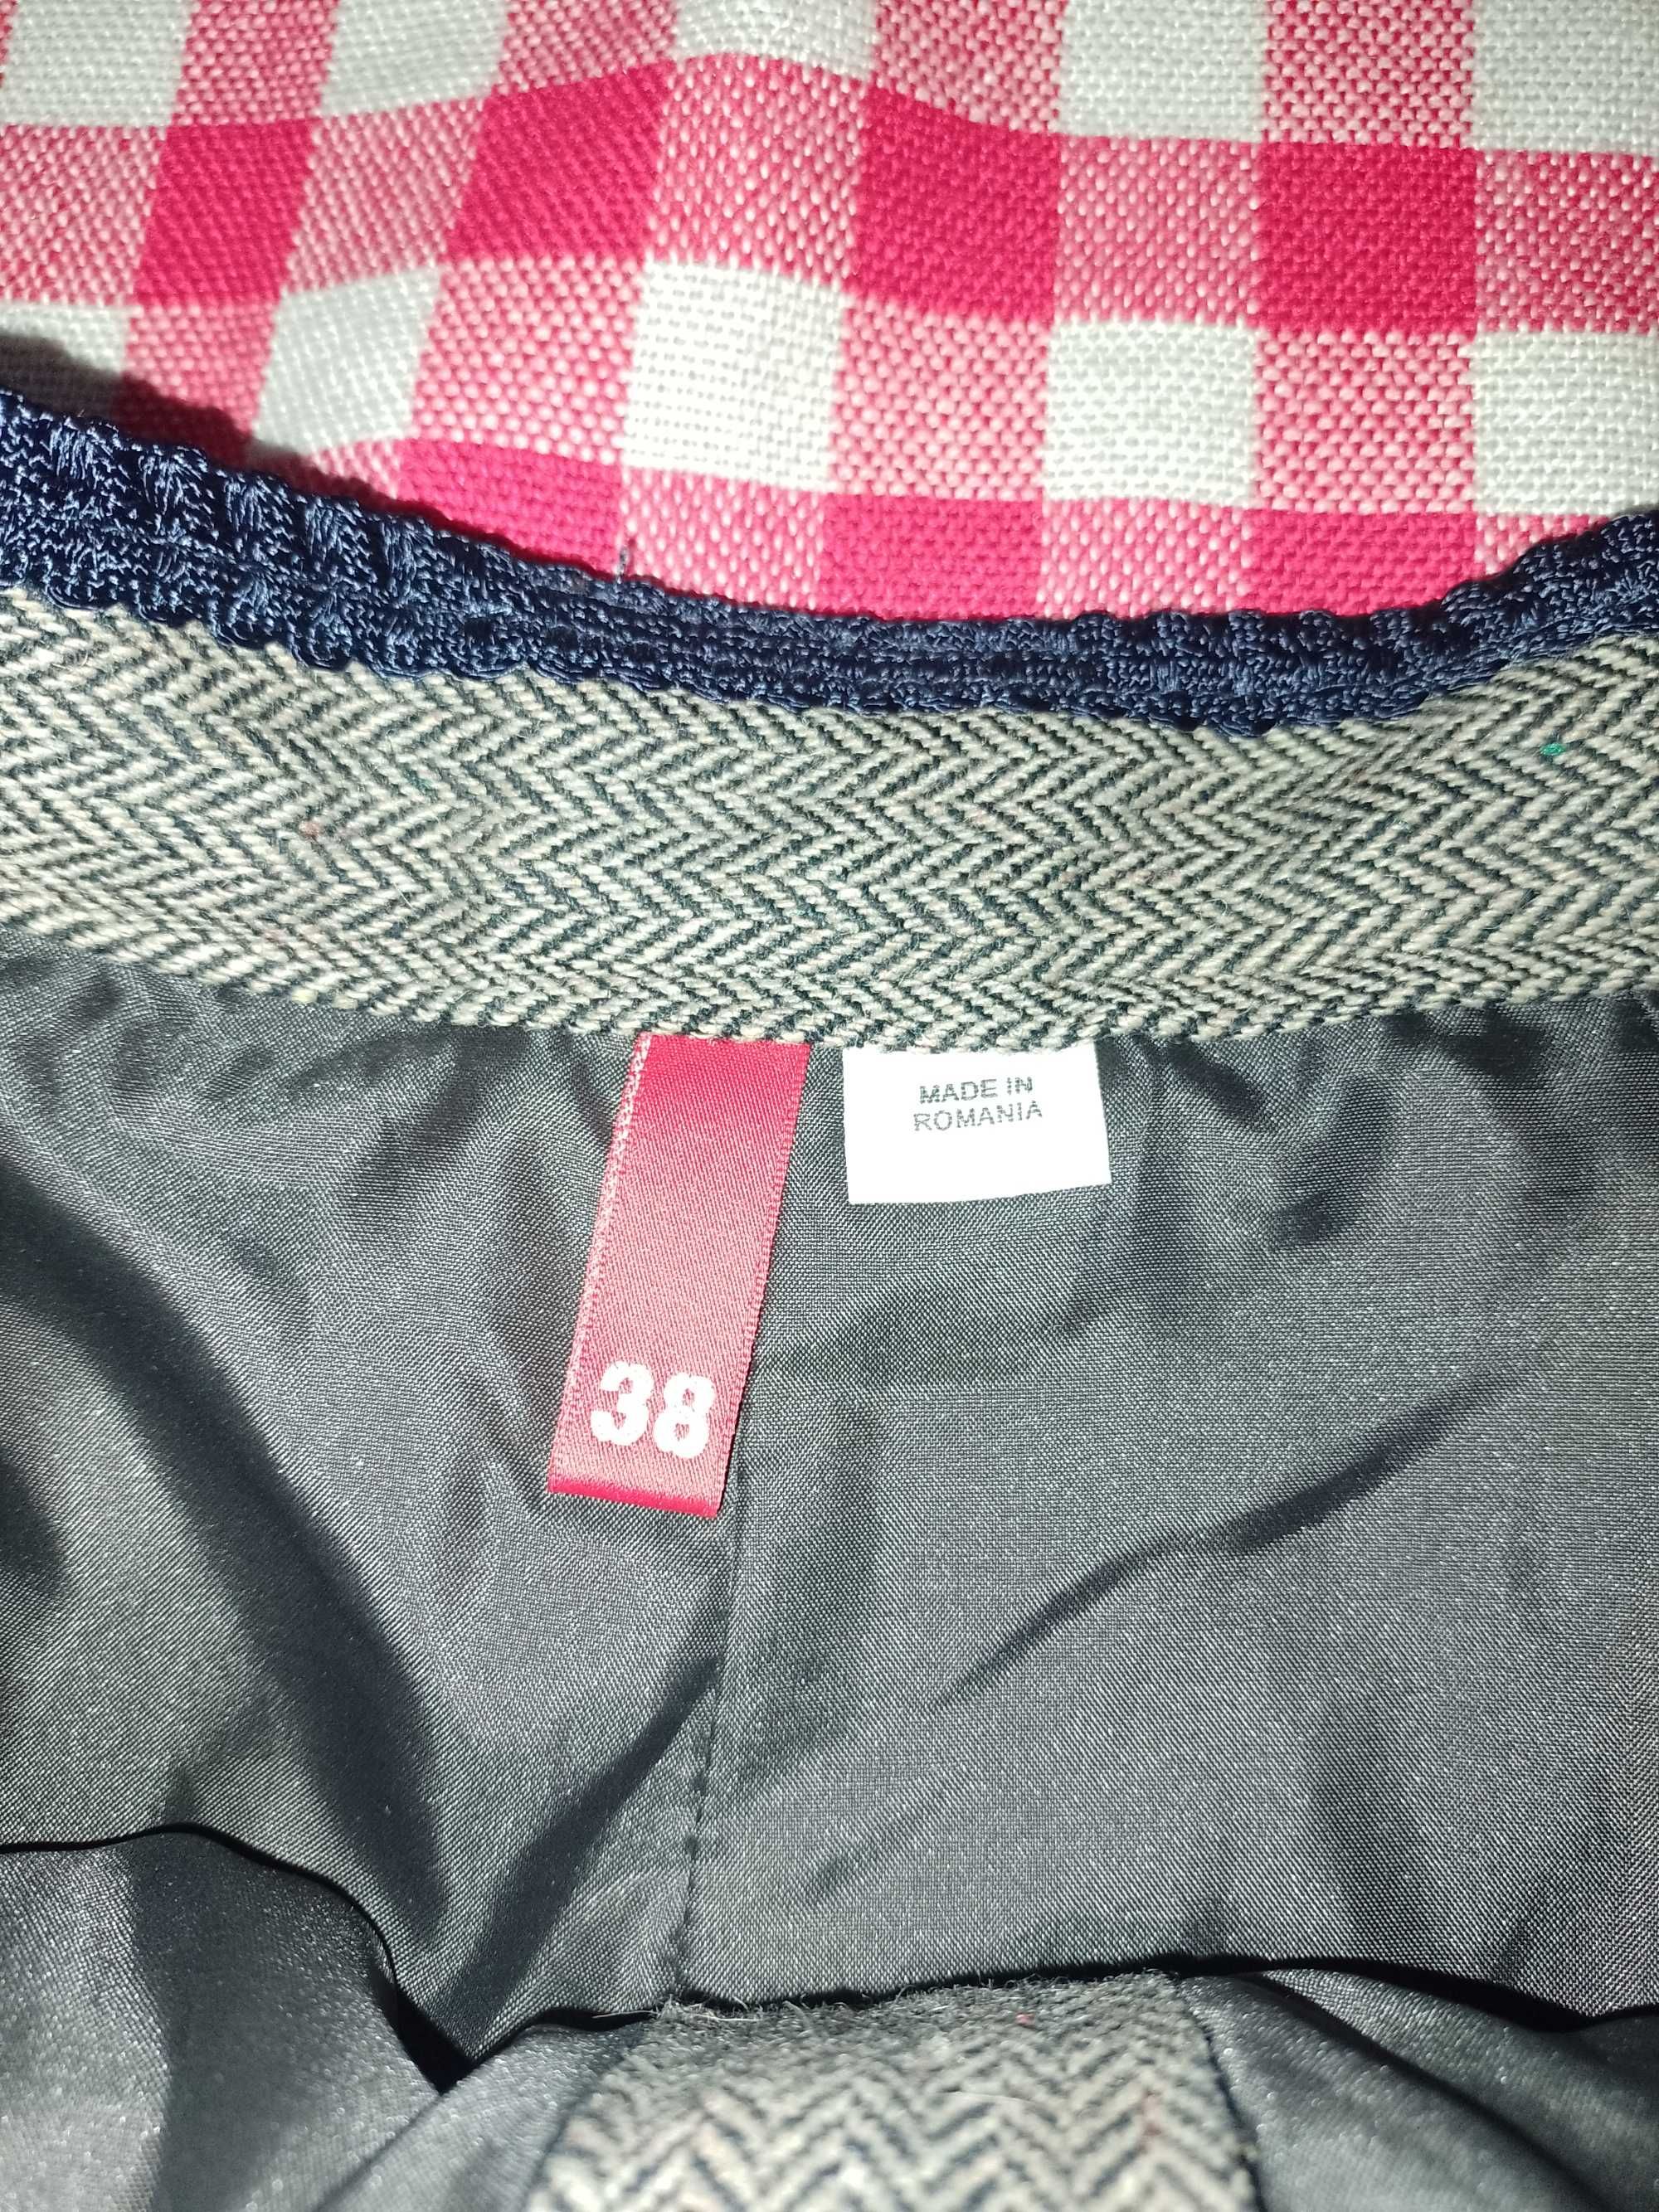 Spódnica damska H&M rozmiar S / M